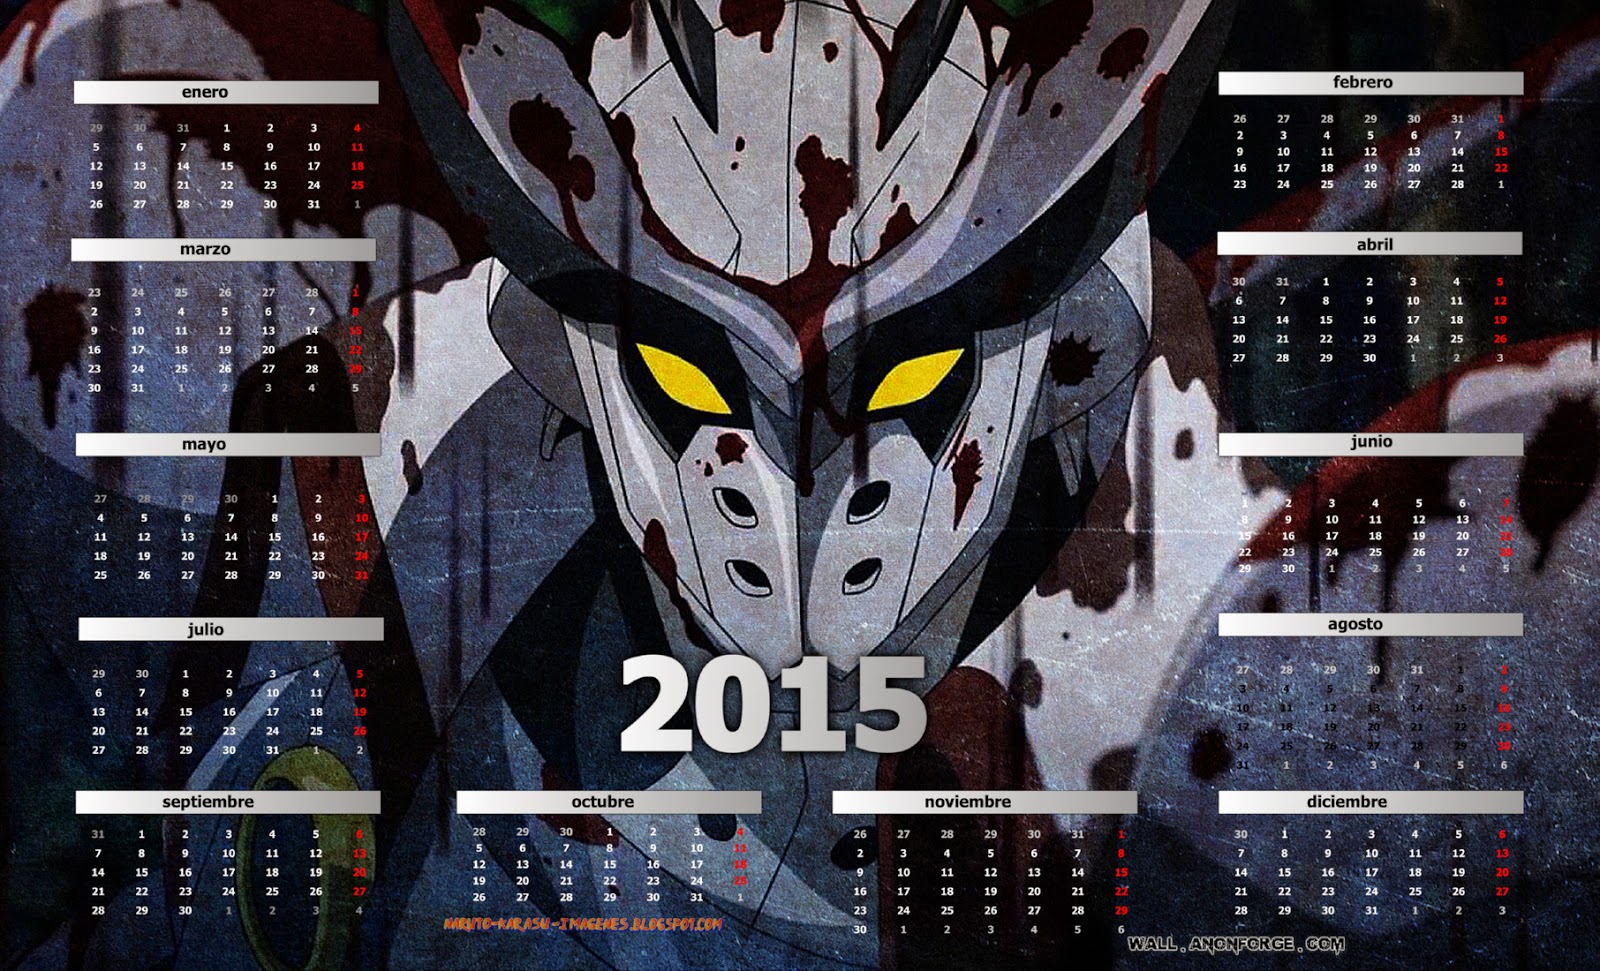 calendario akame ga kill 2015